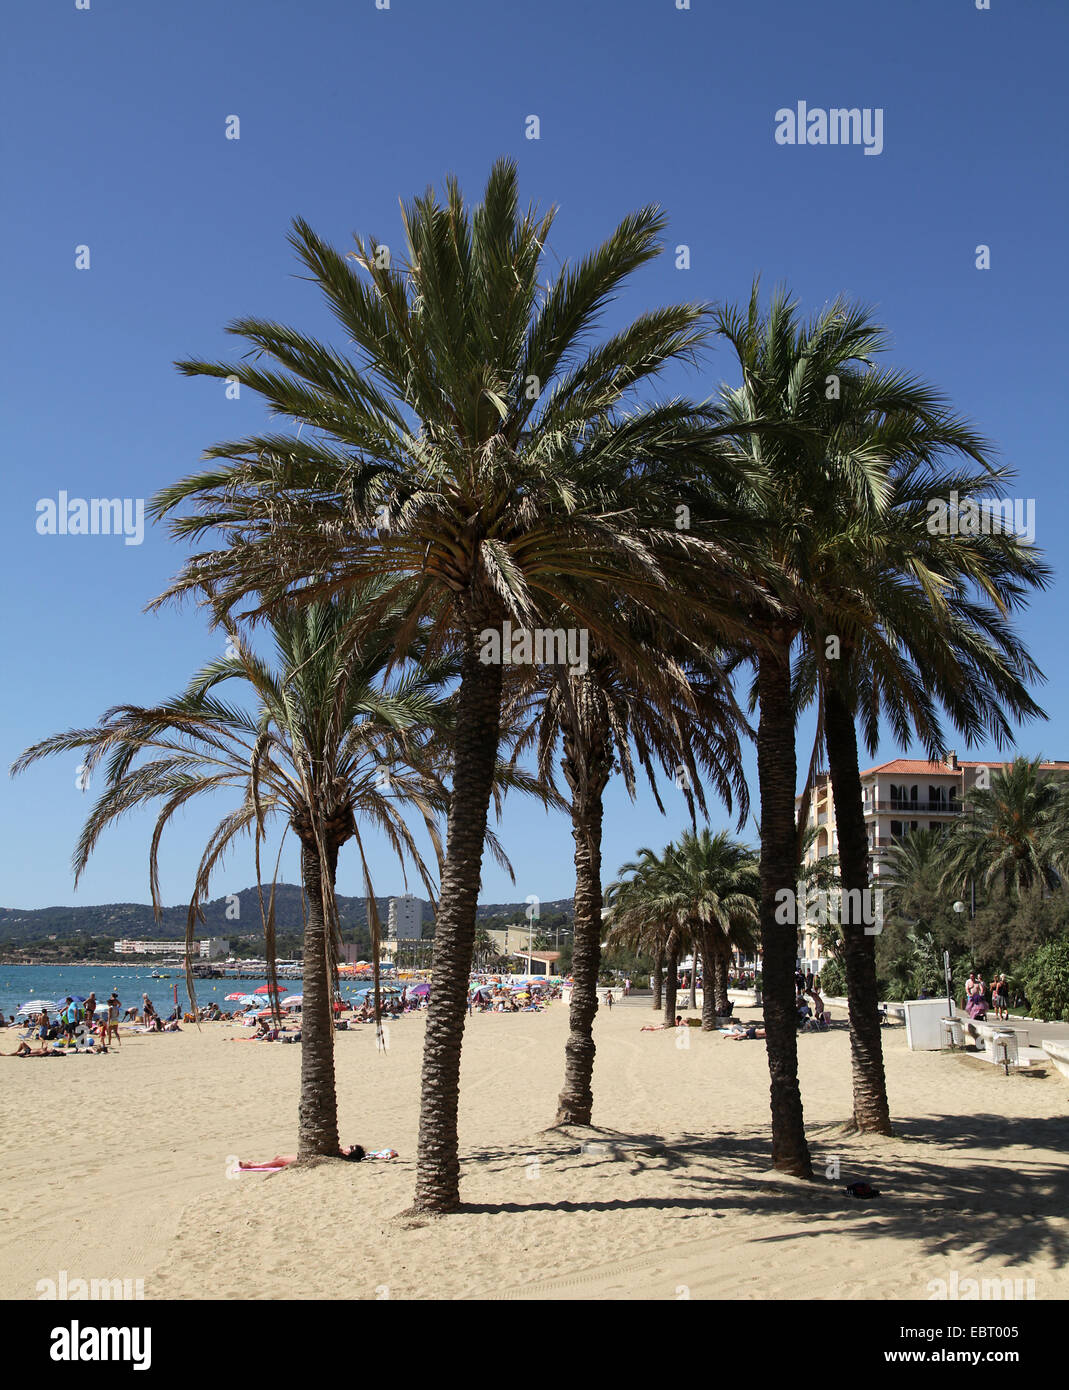 Le lavandou au sud de la france plage avec palmiers.UNE commune du département du Var dans la région Provence-Alpes-Côte d'Azur dans le sud de la France Banque D'Images